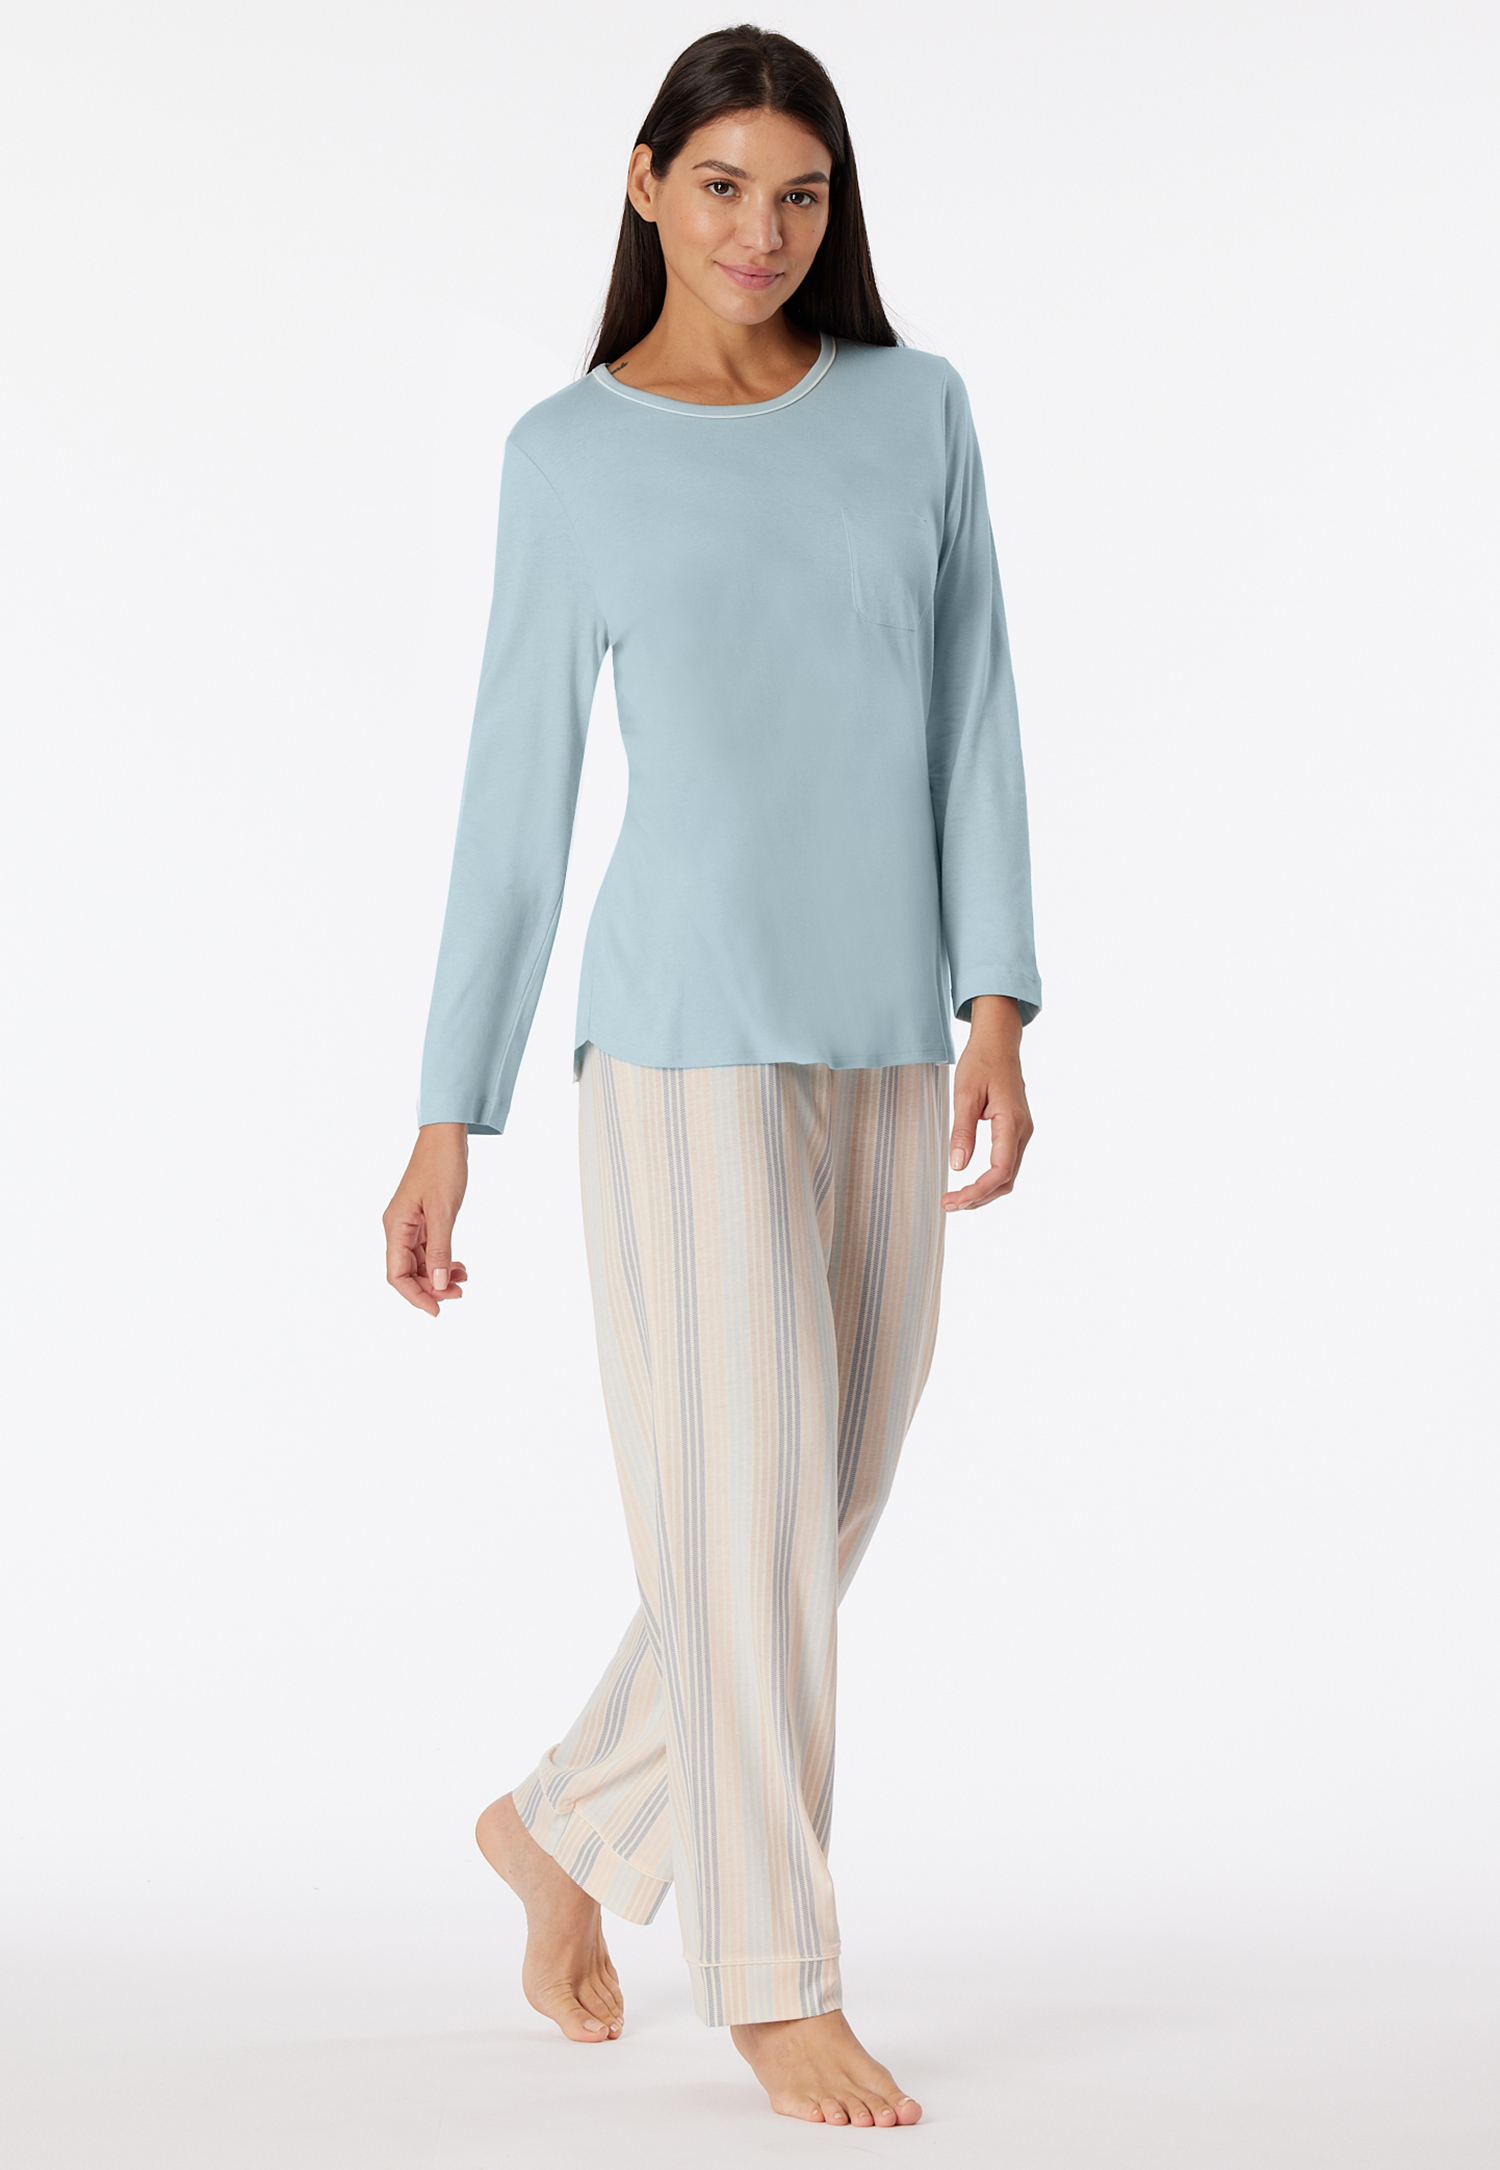 Schlafanzug lang bluebird - Comfort Nightwear 40 von Schiesser